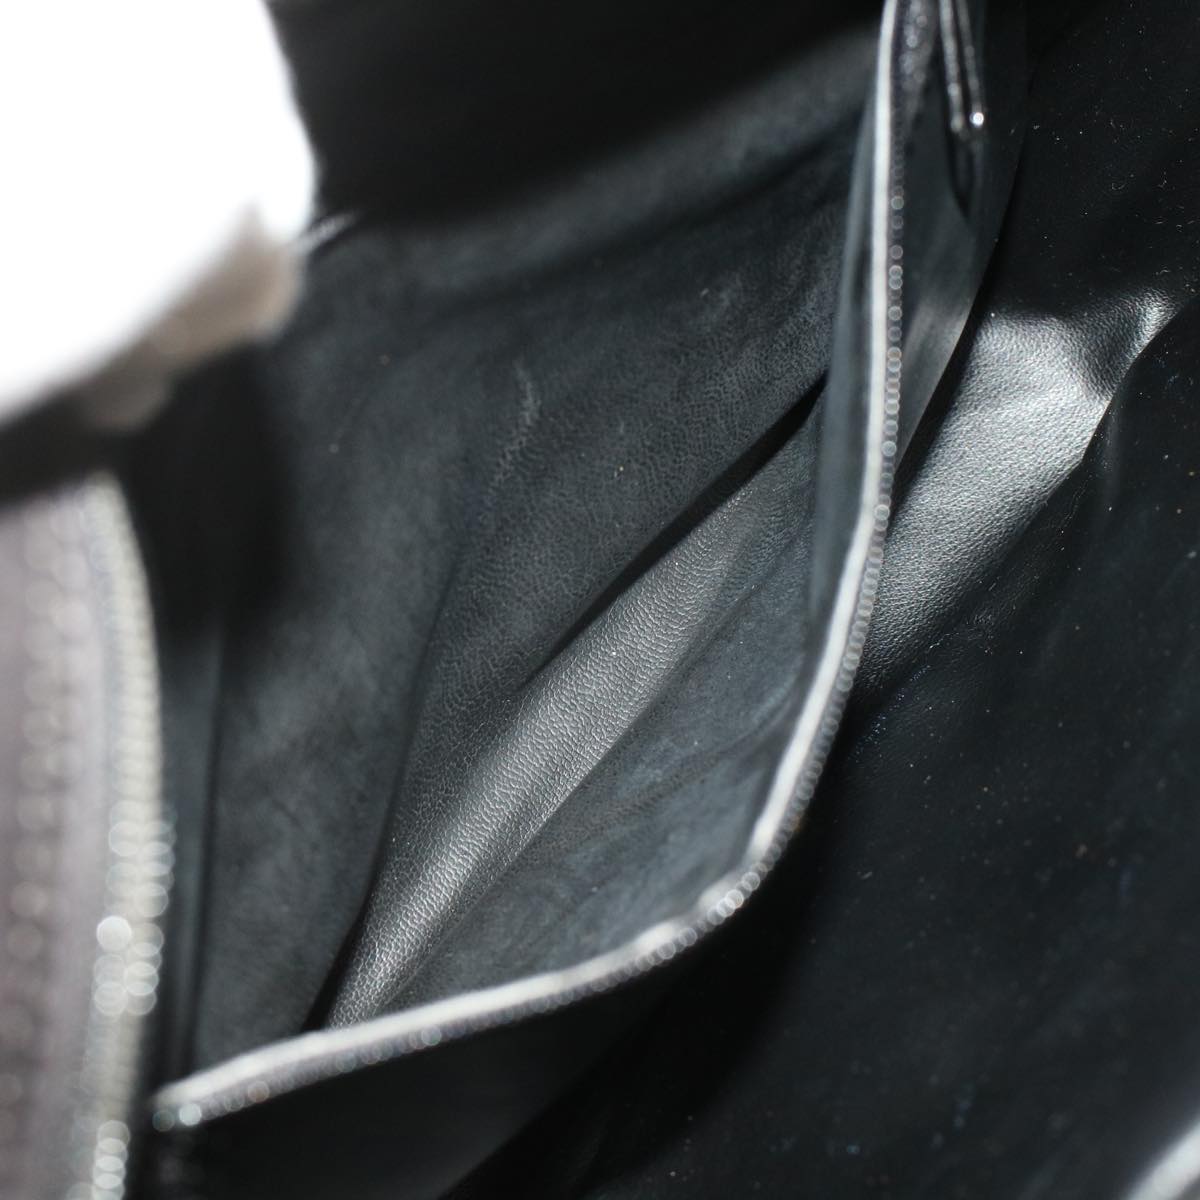 BALLY Shoulder Bag Leather 2Set Black Brown Auth bs7119